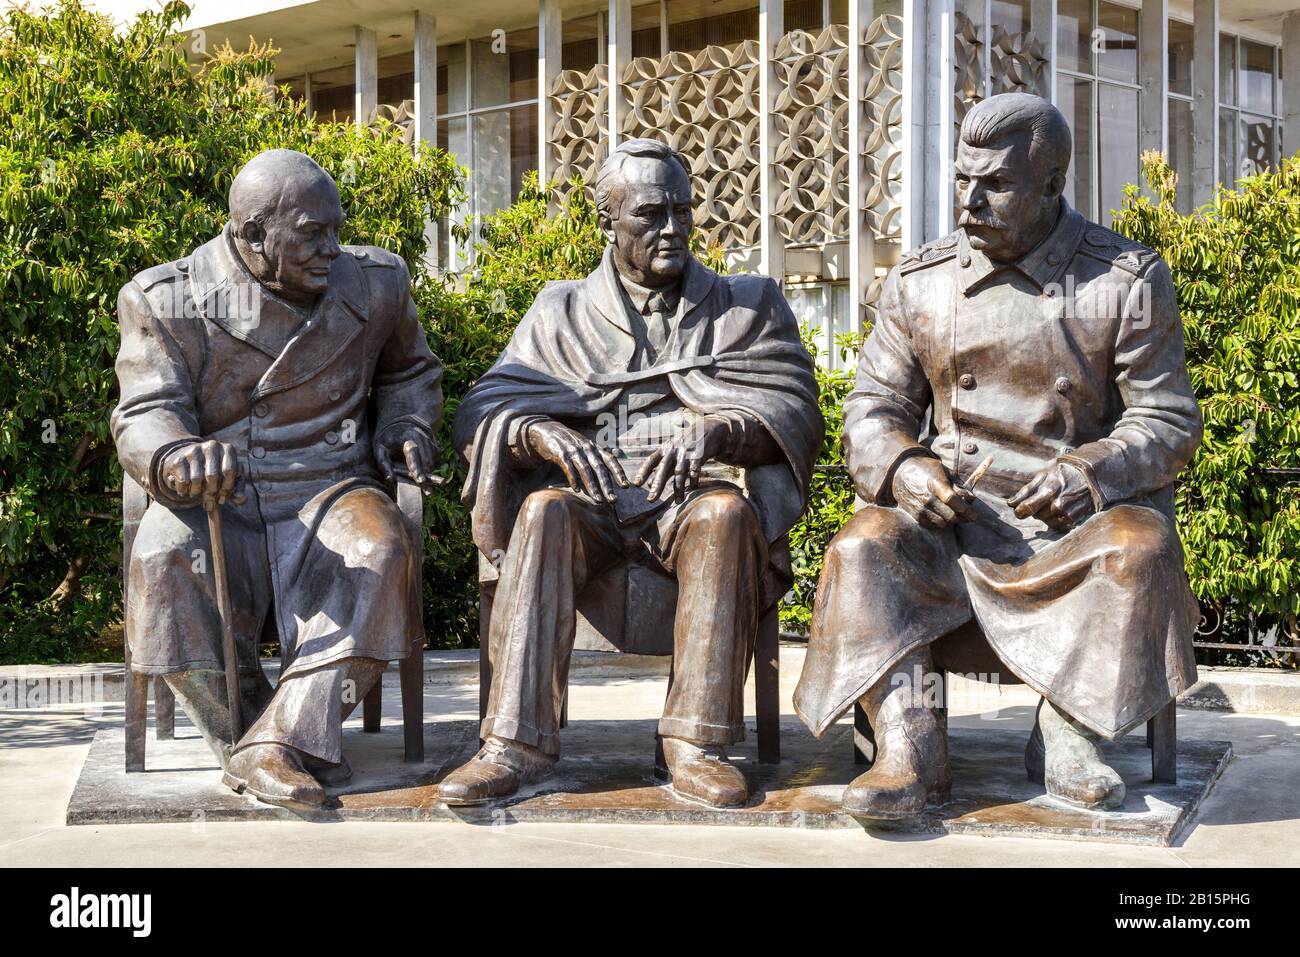 Jutta, Krim - 17. Mai 2016: Skulptur von Churchill, Roosevelt und Stalin im Livadia Palace, Krim, Russland. Statuen von Zurab Tseretelis im Sommer. Th Stockfoto